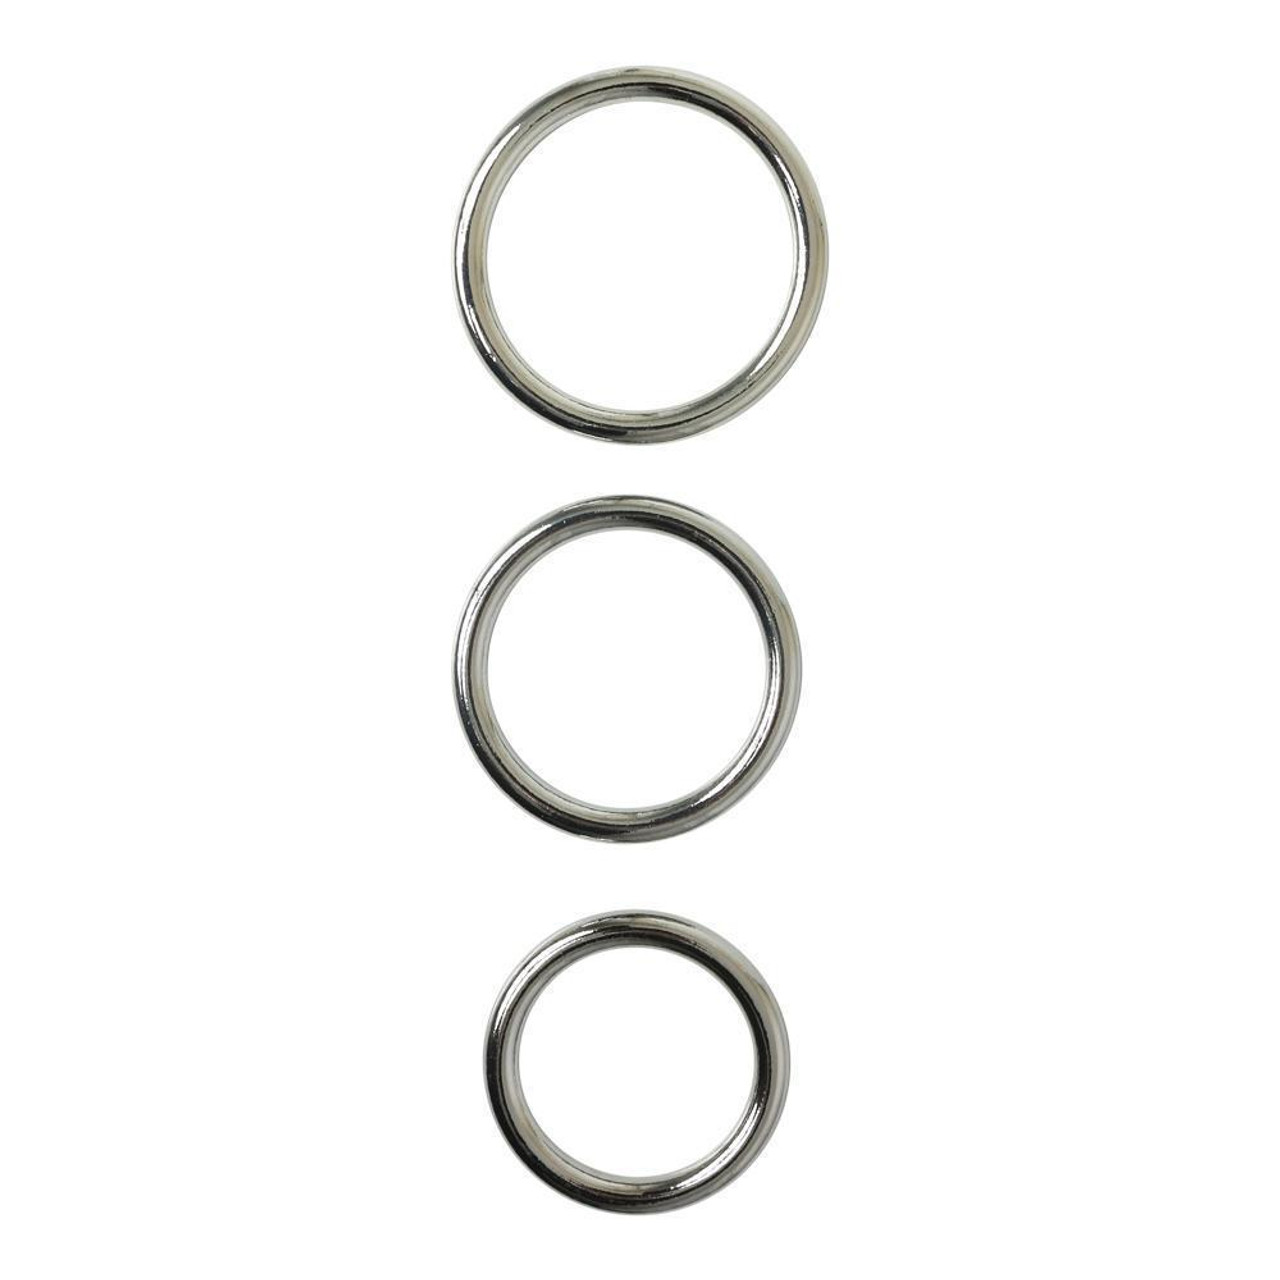 Seamless Metal O-Ring - 3 Pack